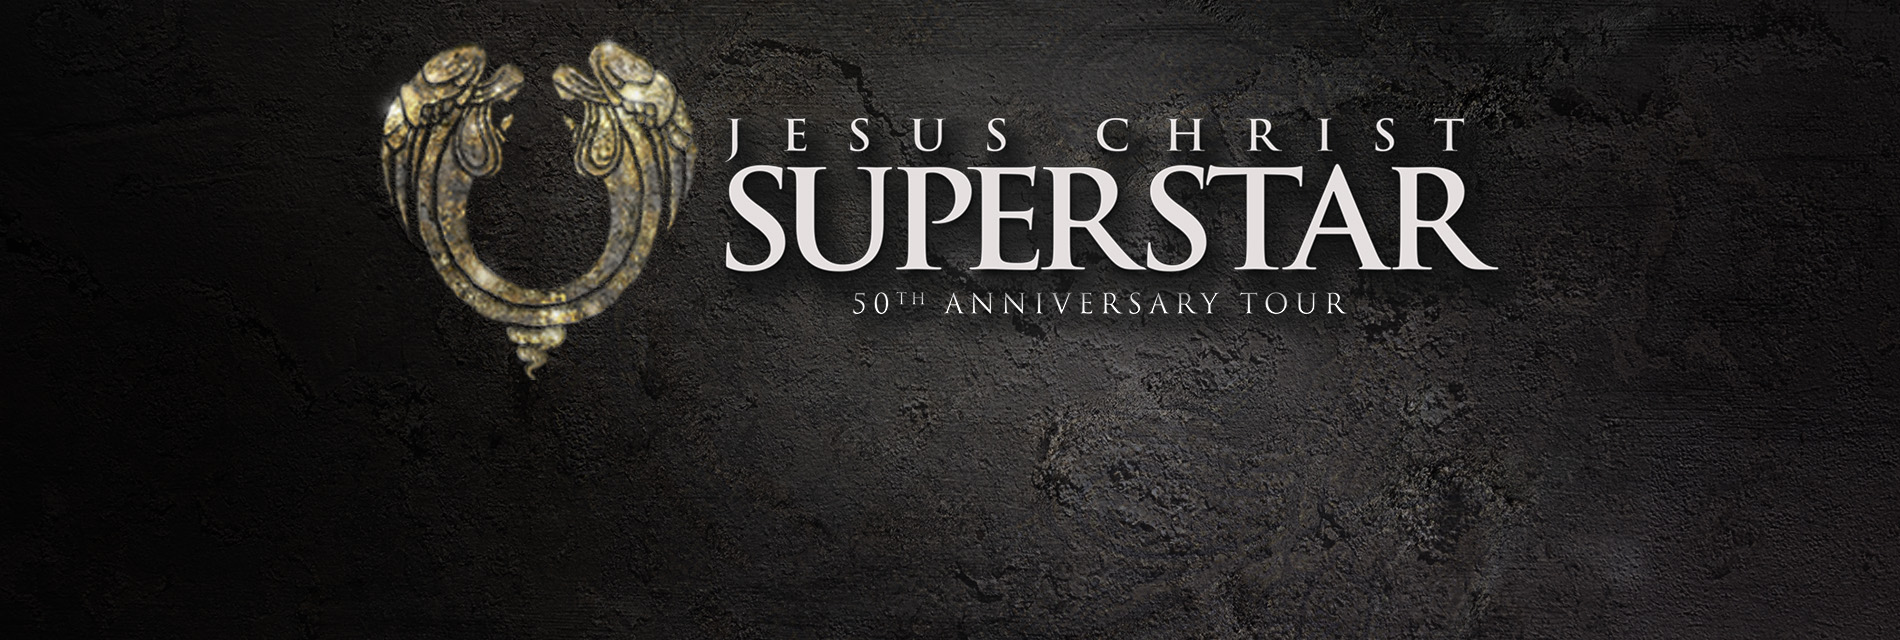 Slide 1: Jesus Christ Superstar